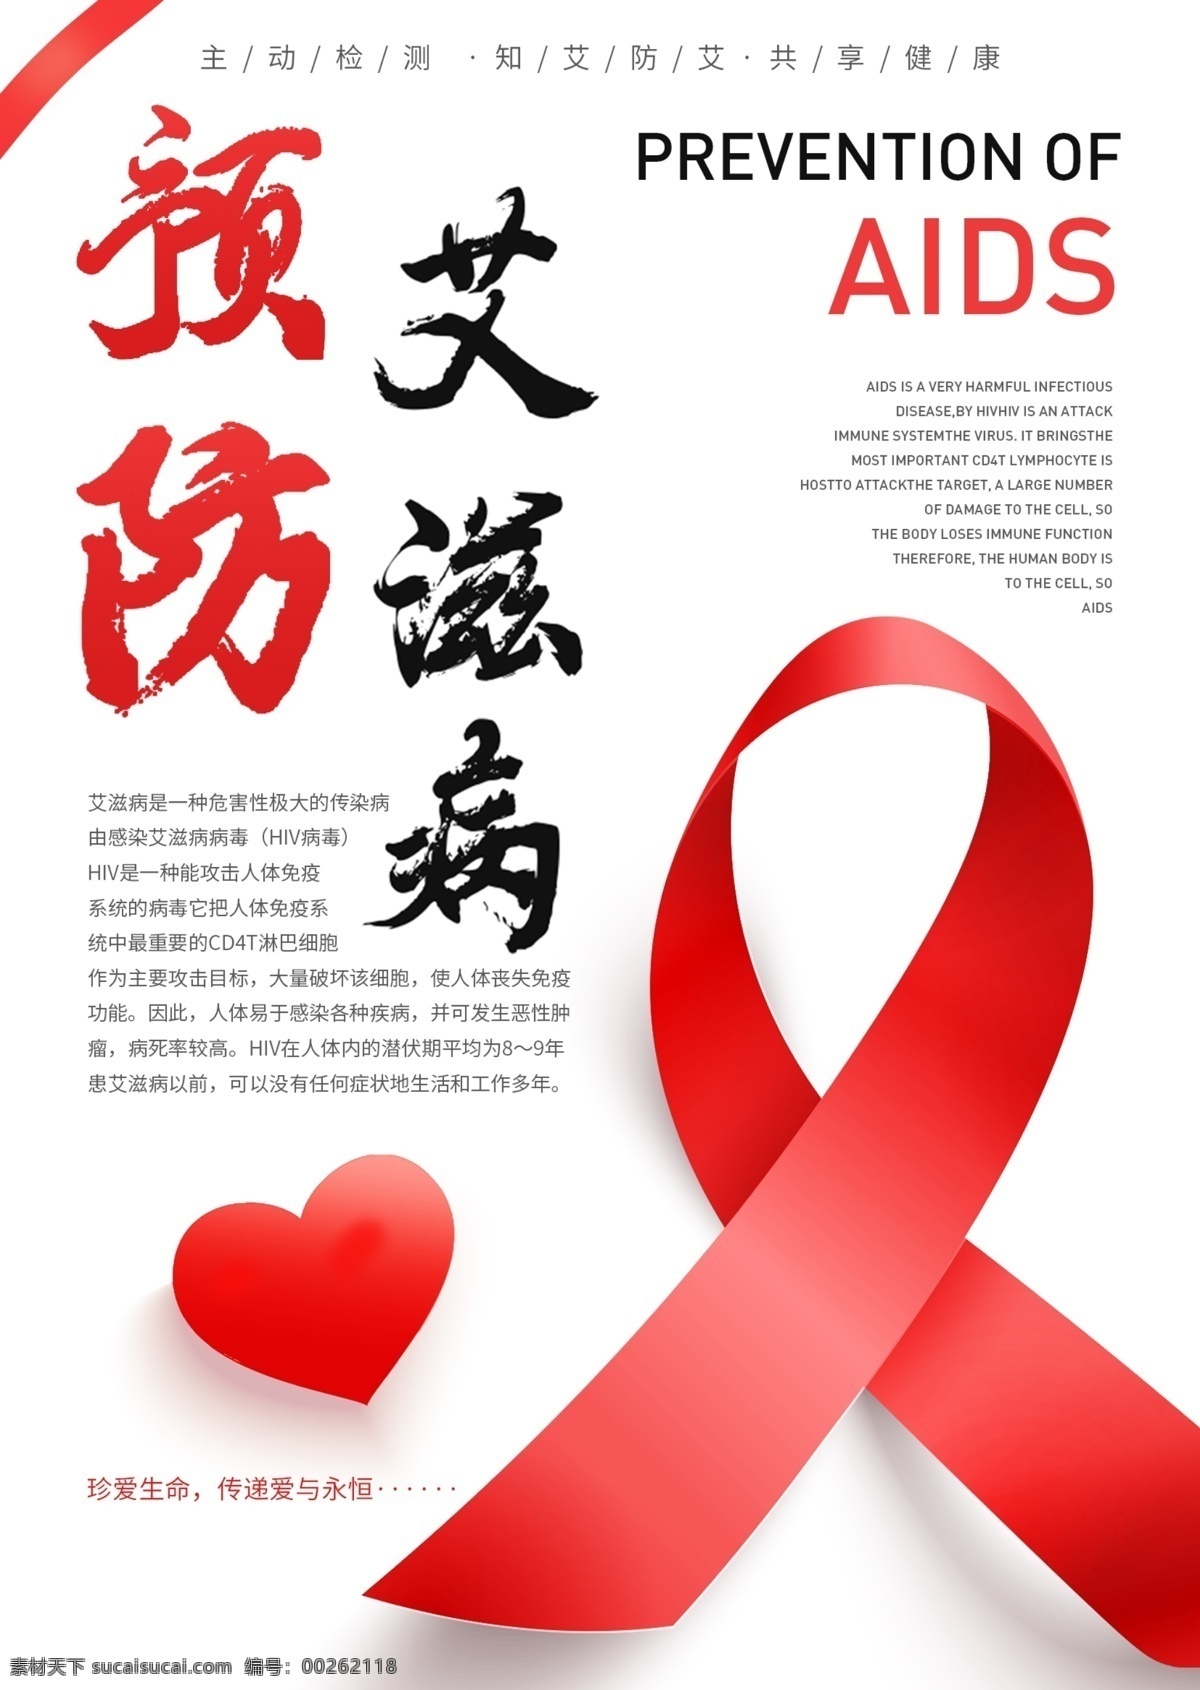 预防艾滋病日 预防艾滋 携手抗艾 重在预防 艾滋病海报 艾滋病 世界艾滋病日 艾滋病广告 青春零艾滋 艾滋病宣传栏 艾滋病知识 艾滋病标志 艾滋 aids 预防艾滋病 艾滋病日 关注艾滋病 艾滋病预防 艾滋病展架 公益广告 爱心 关爱艾滋患者 艾滋病展板 艾滋两性 两性健康 性知识 关